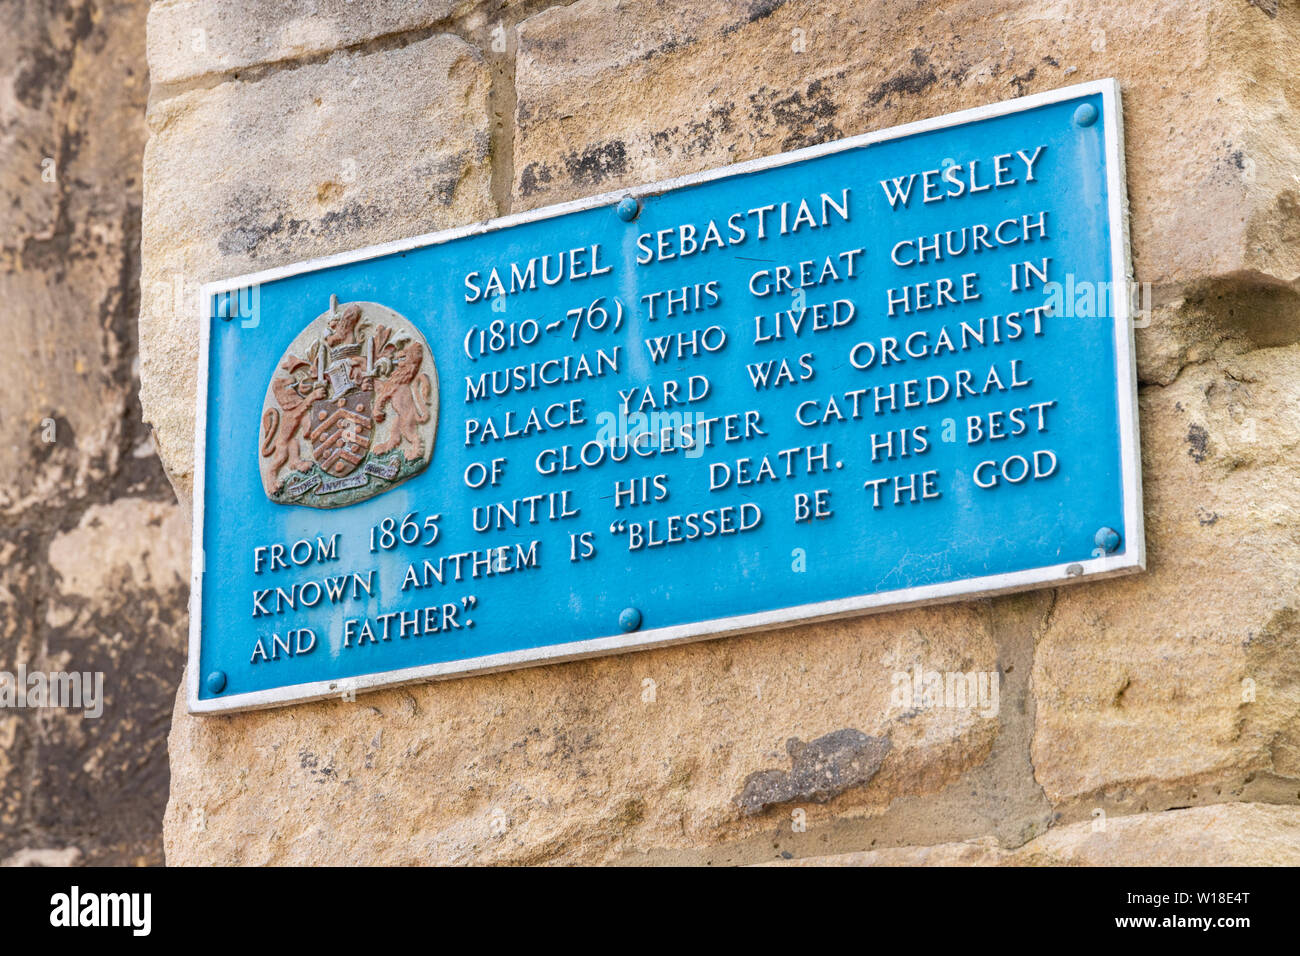 Plaque commémorative à bleu Samuel Sebastian Wesley 1810-1876 musicien et organiste à la cathédrale de Gloucester, Palace Yard, Gloucester UK Banque D'Images